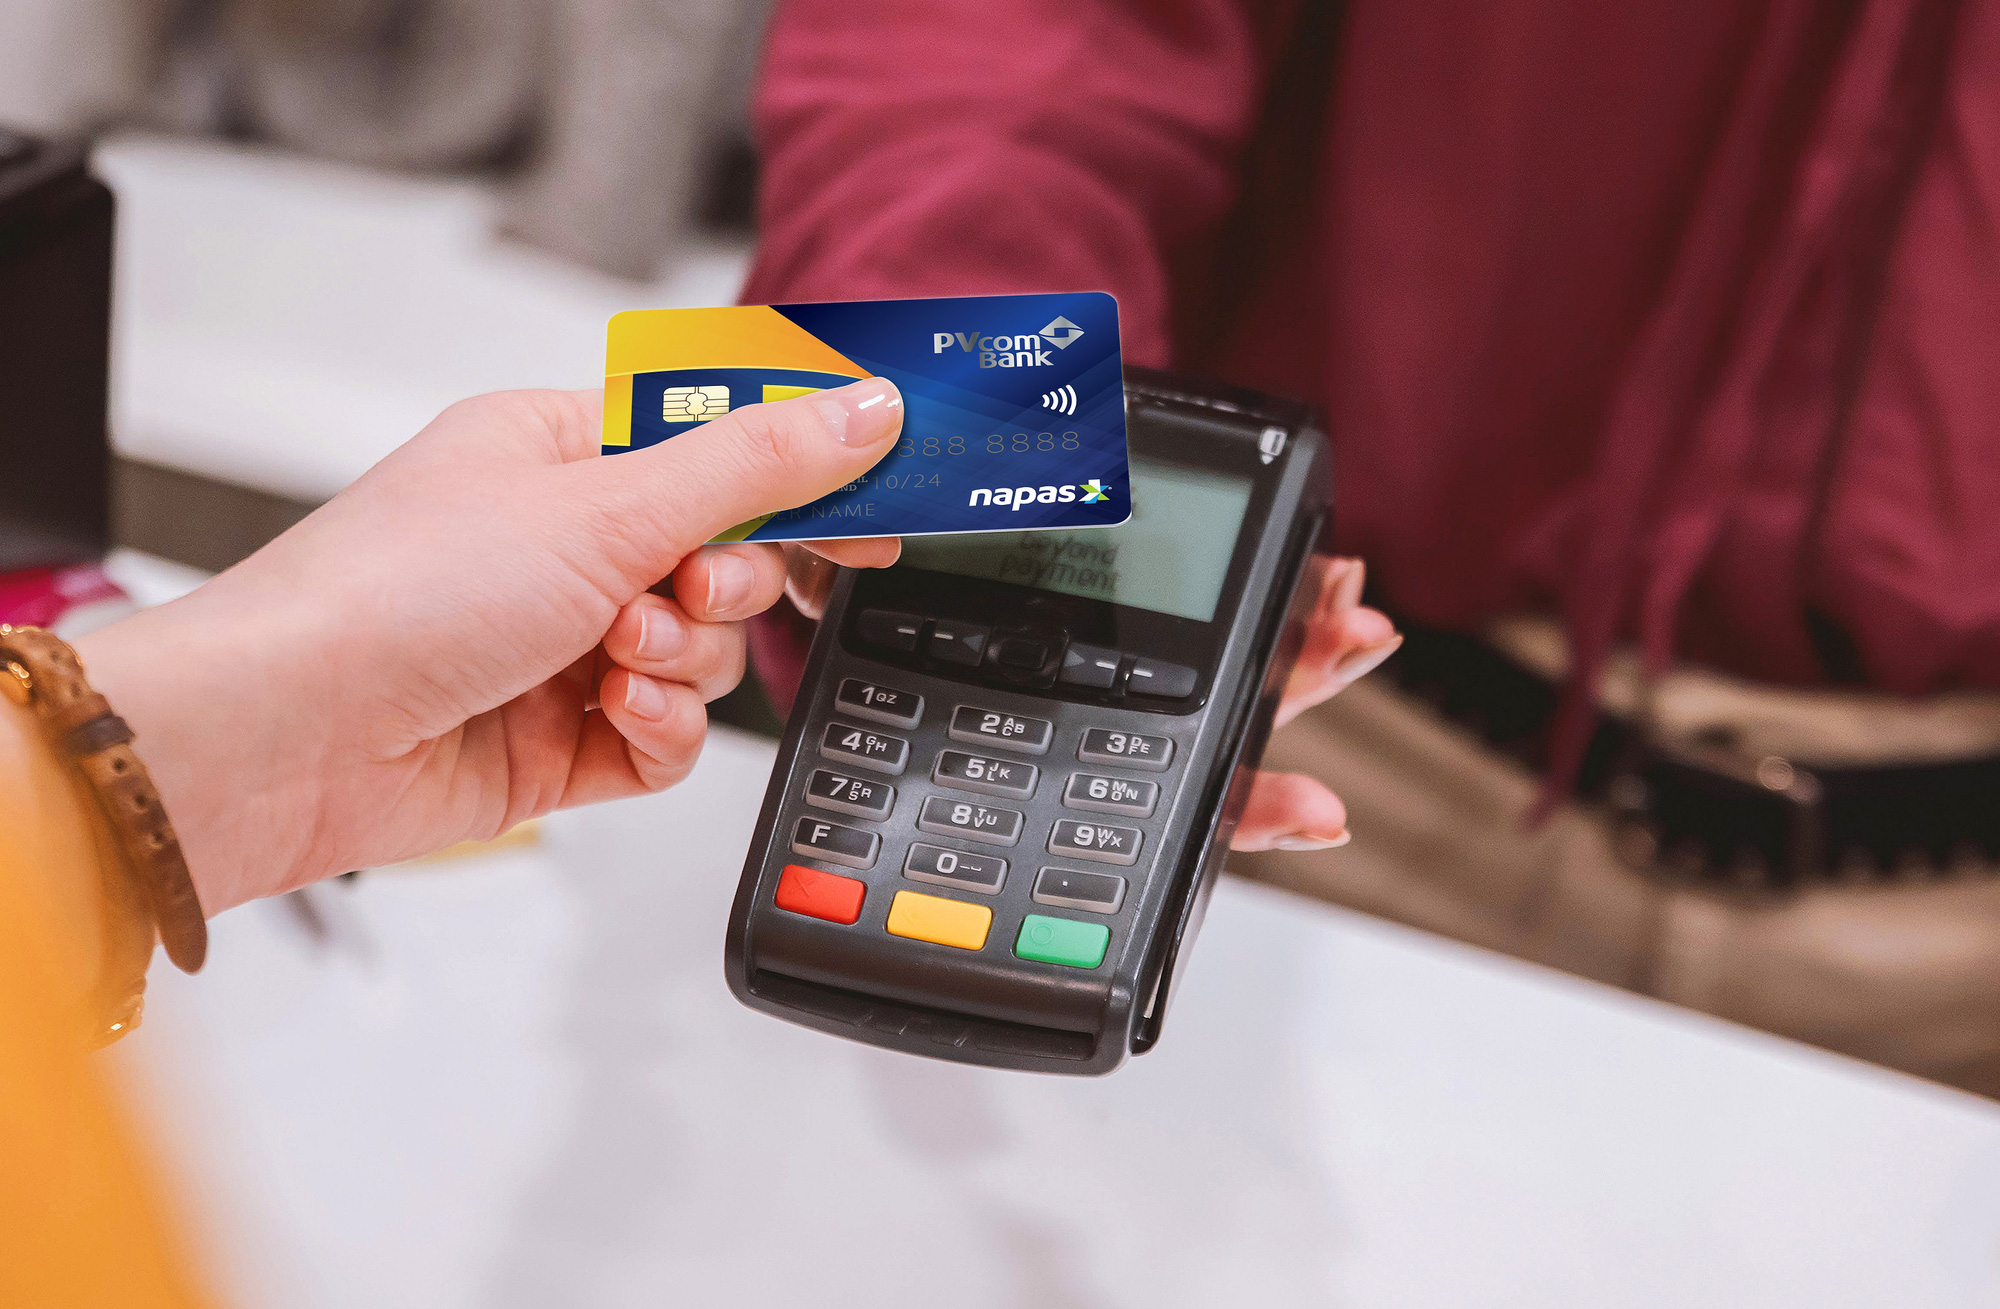 Thẻ từ ATM sẽ chính thức bị ngừng hỗ trợ vào ngày 31/12/2021: Đây là những điều cần lưu ý khi sử dụng thẻ ATM gắn chip - Ảnh 2.